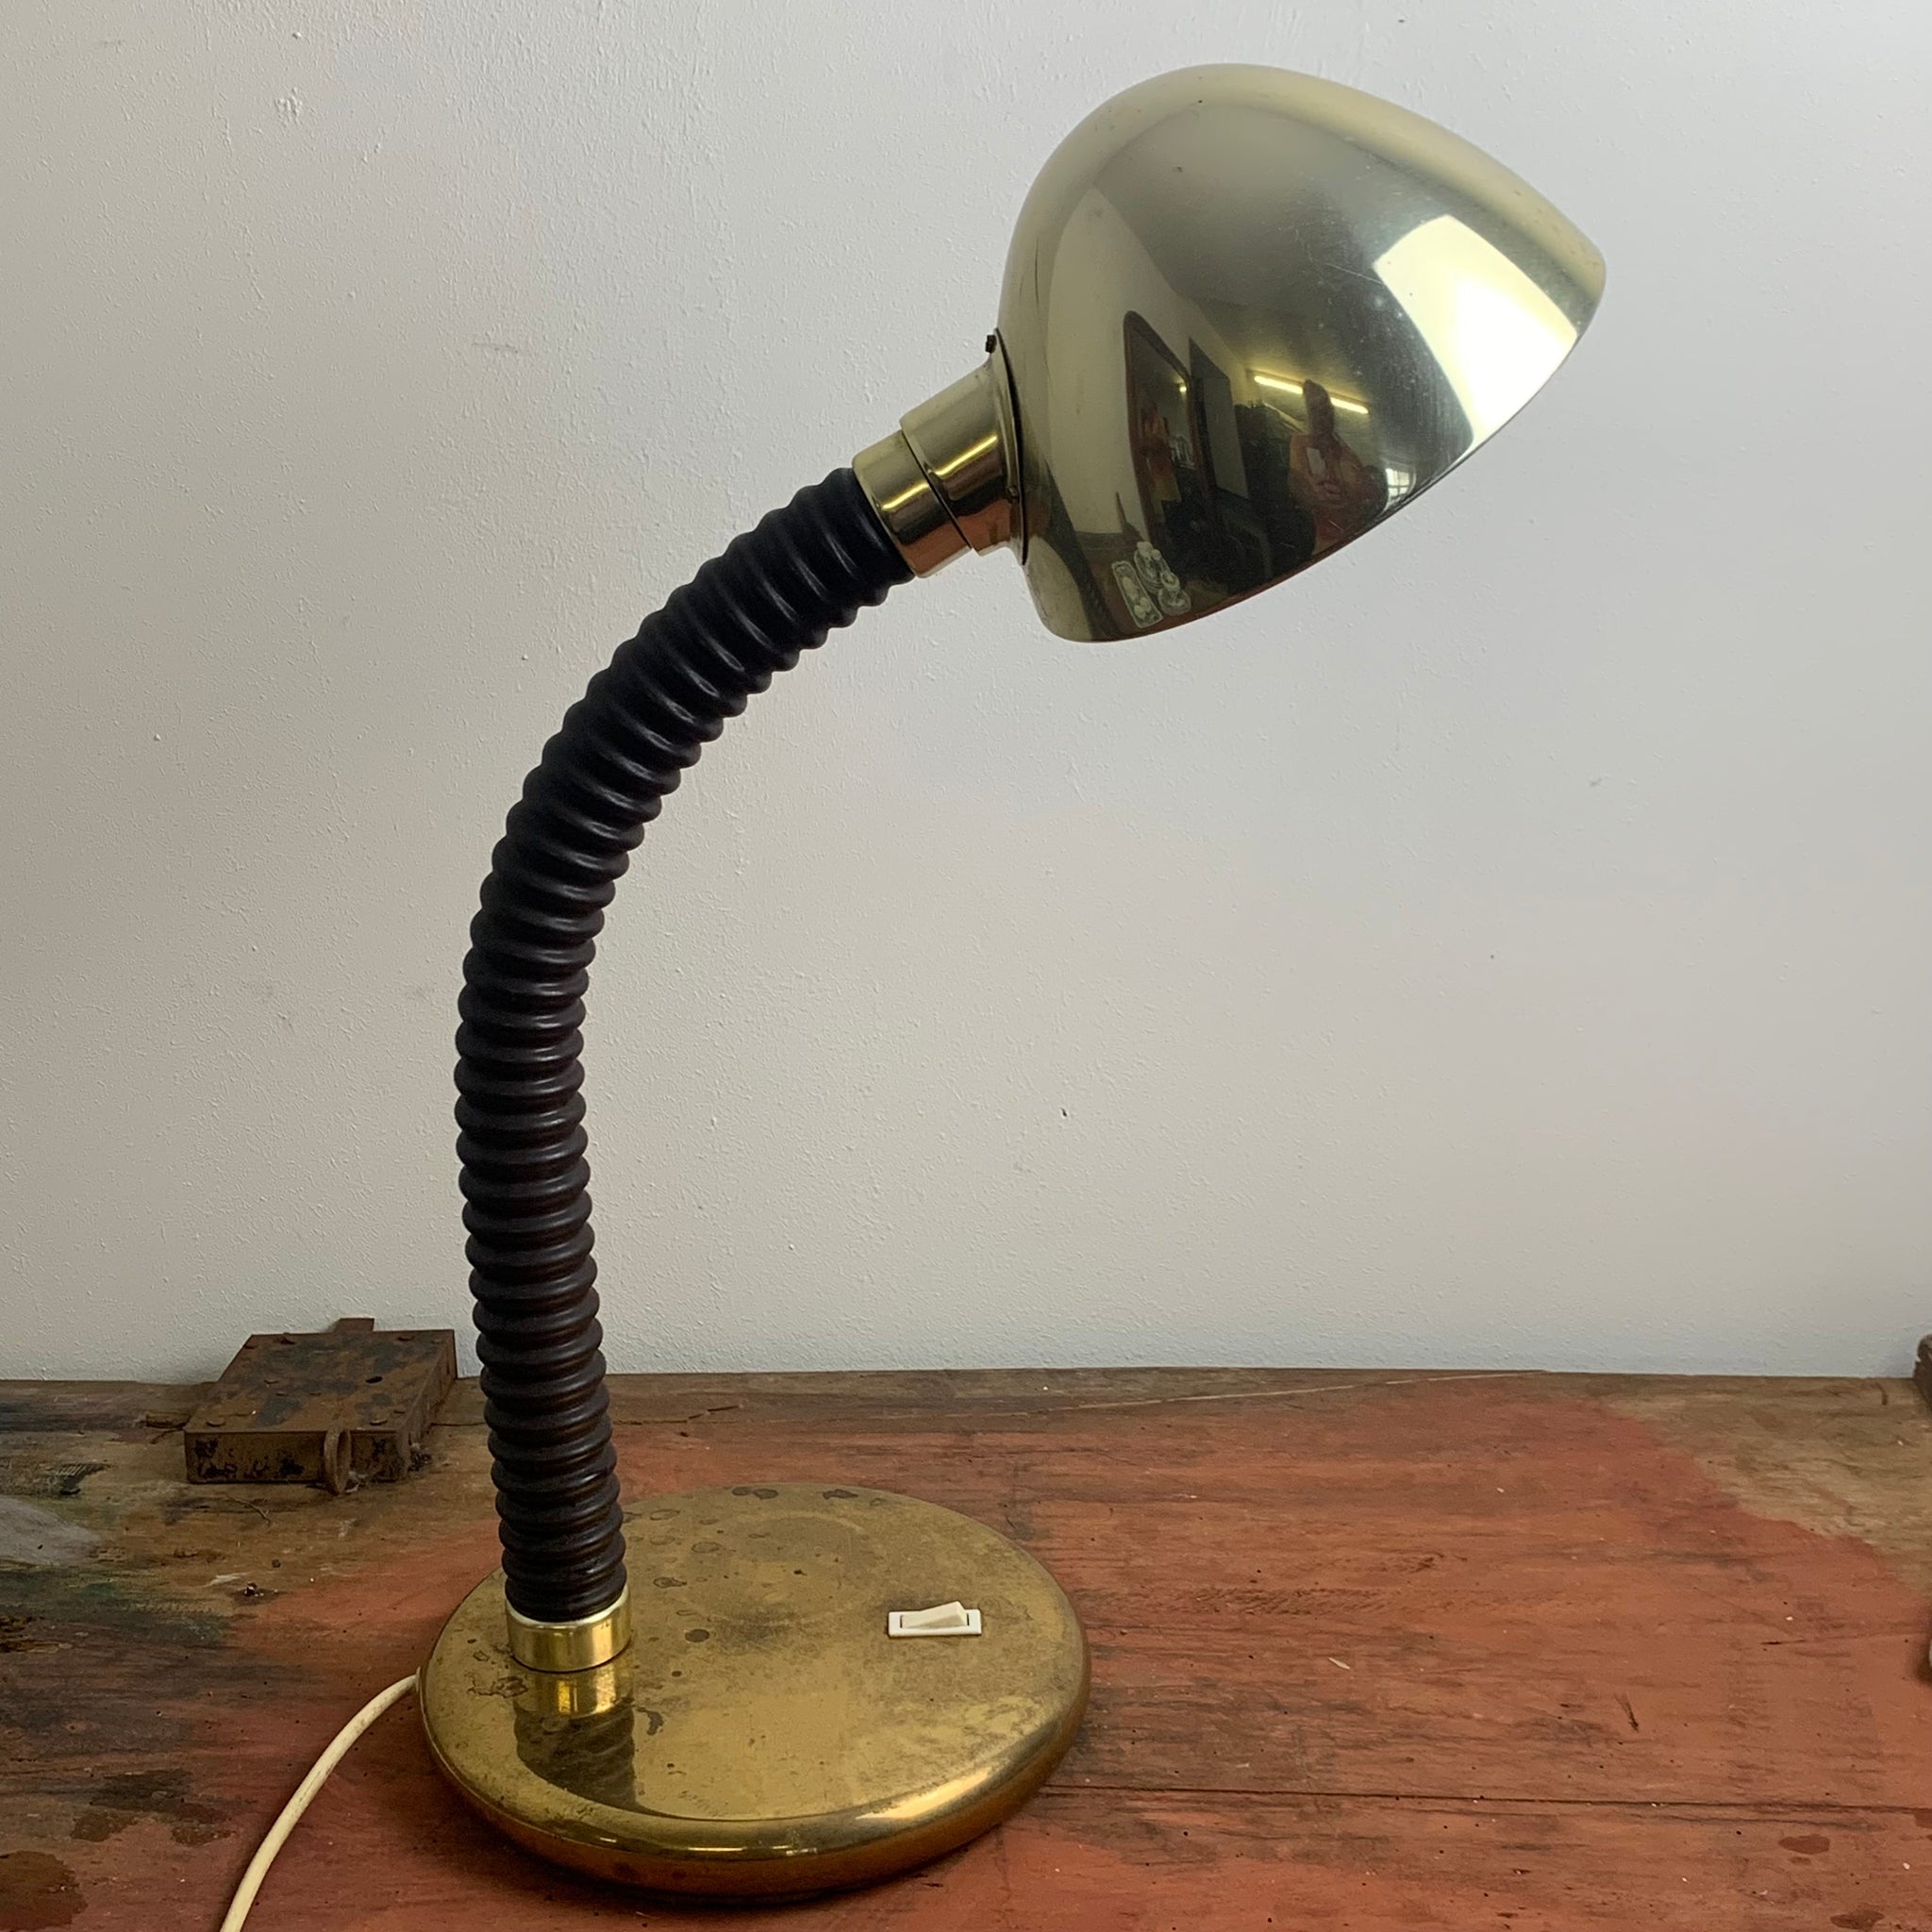 Hillebrand Schwanenhals Lampe, Schreibtischlampe